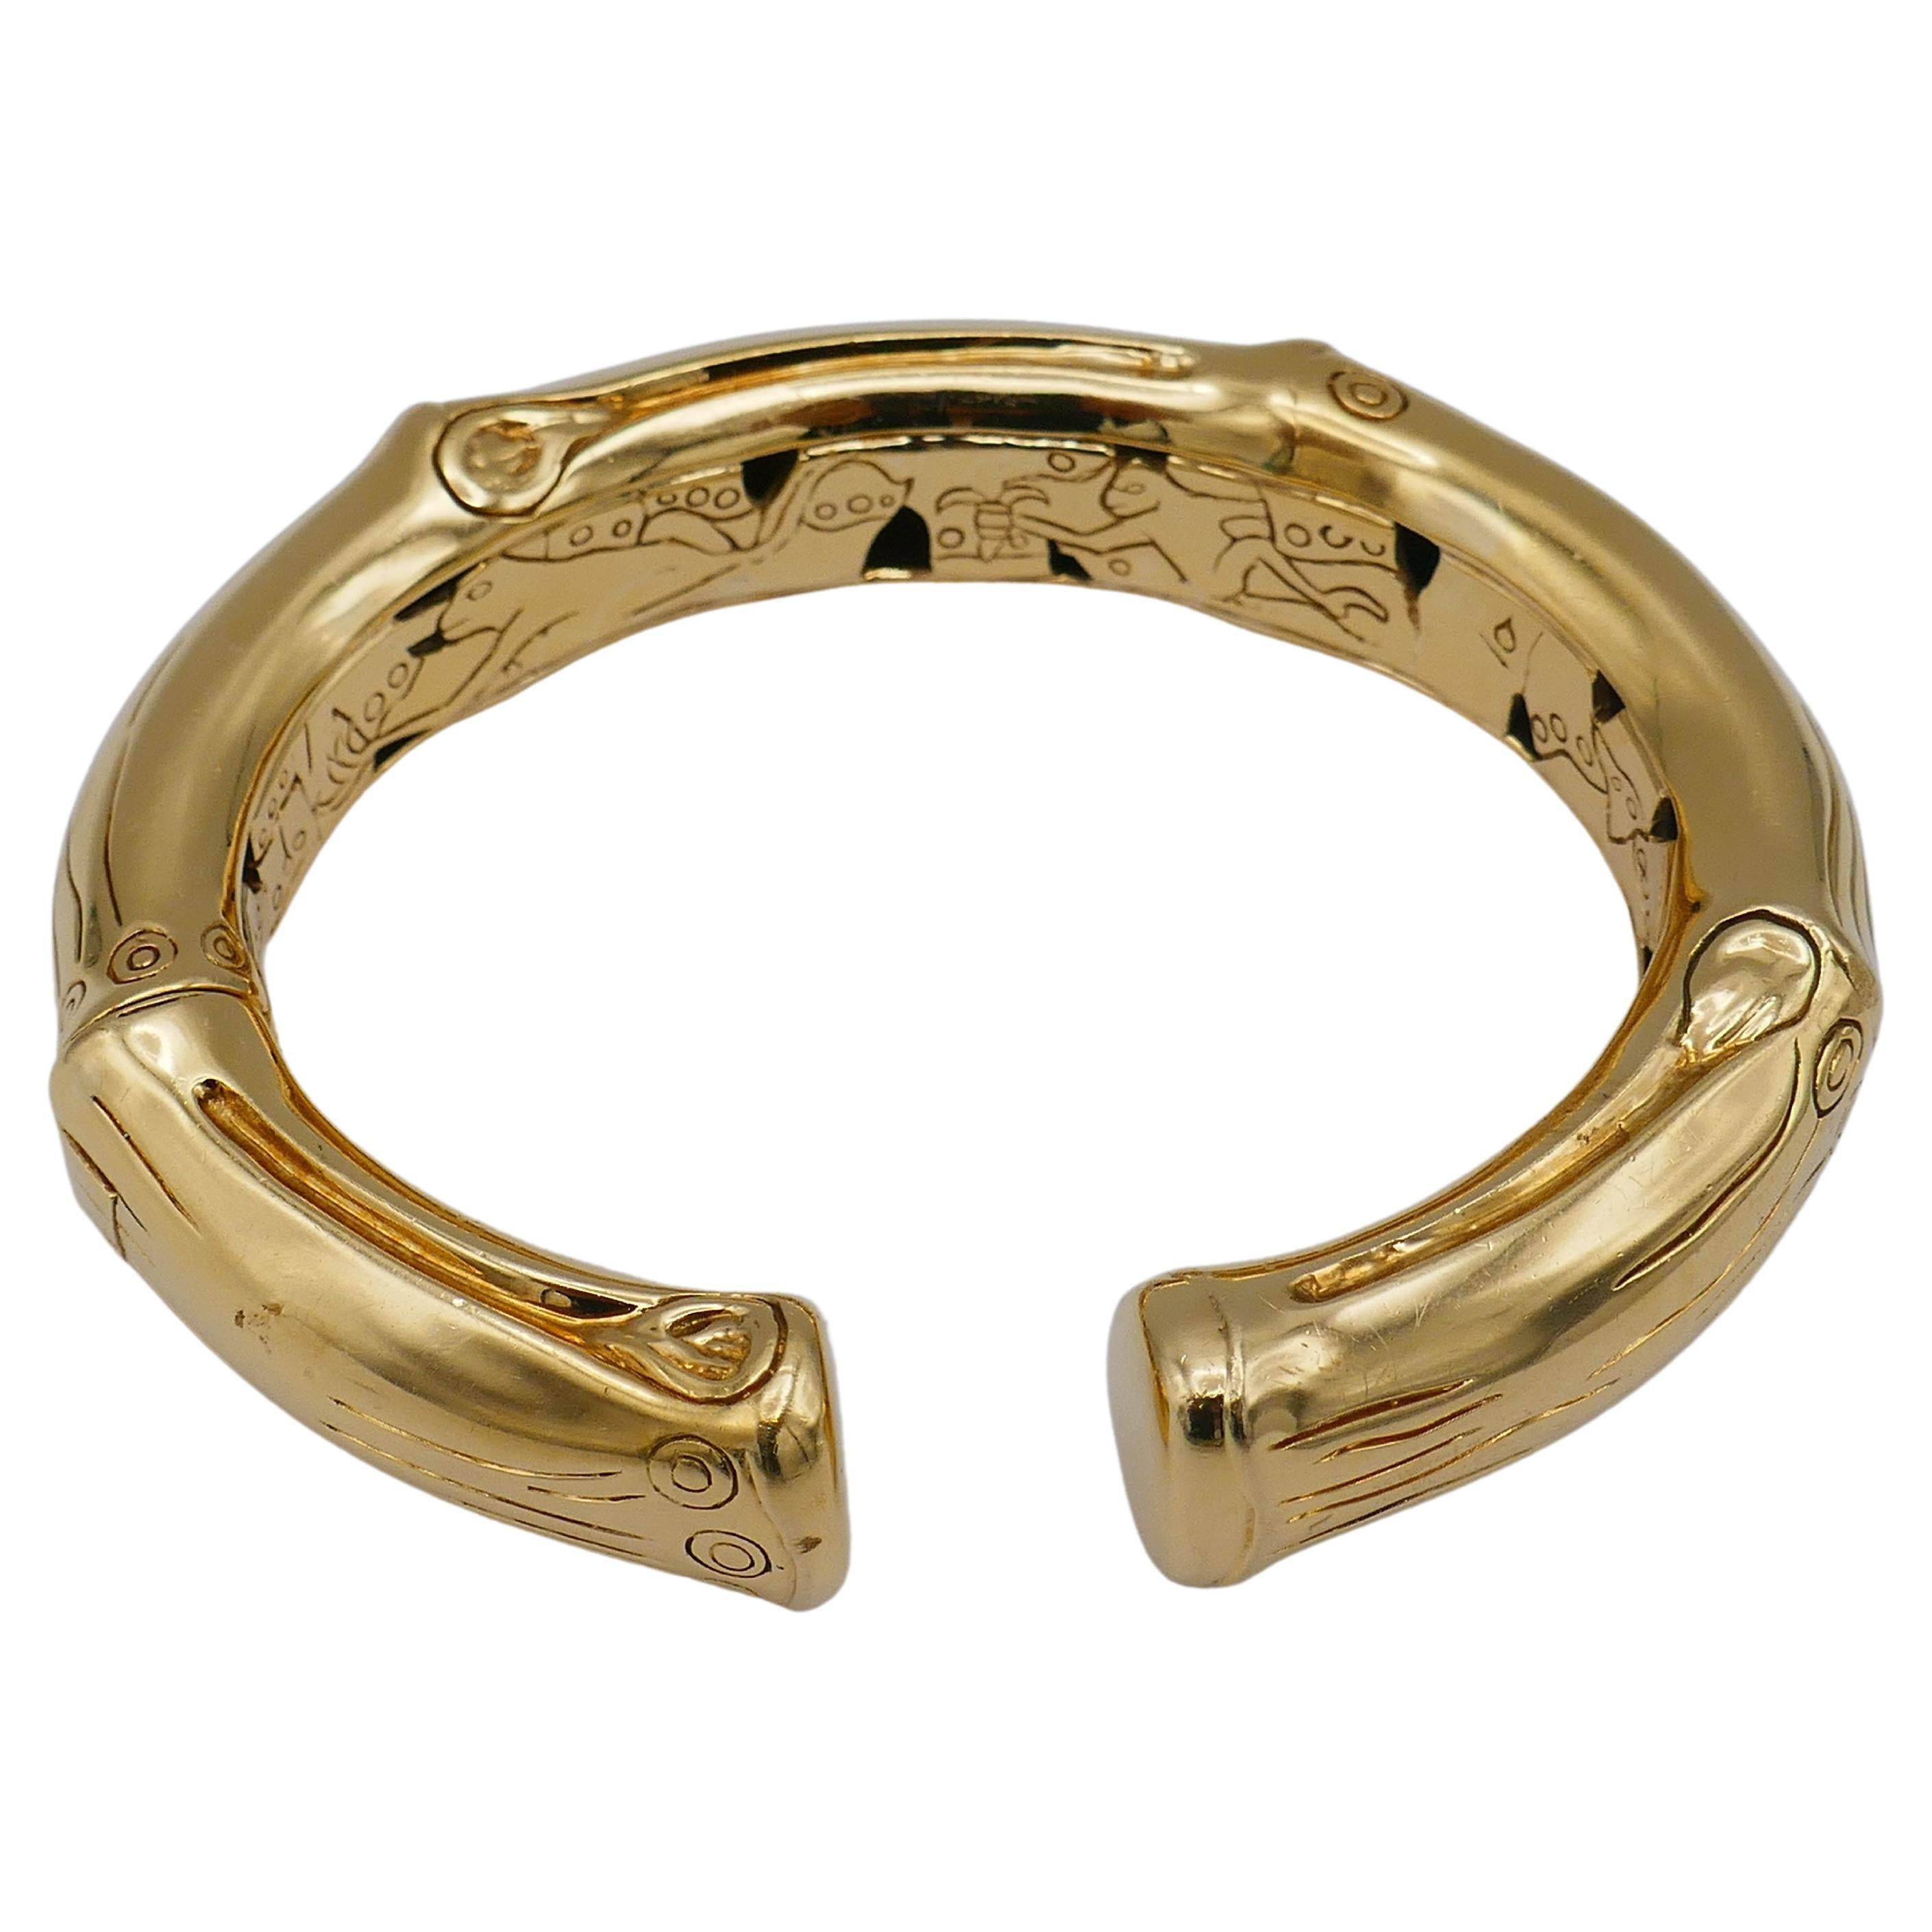 Un bracelet en or 18k brillant et épais de John Hardy de la collection Bamboo. 
Fabriqué à la main à Bali, ce bracelet en or a une forme organique de bambou. 
Un motif signé Hardy's est appliqué sur l'extérieur et l'intérieur de la pièce. Les fines